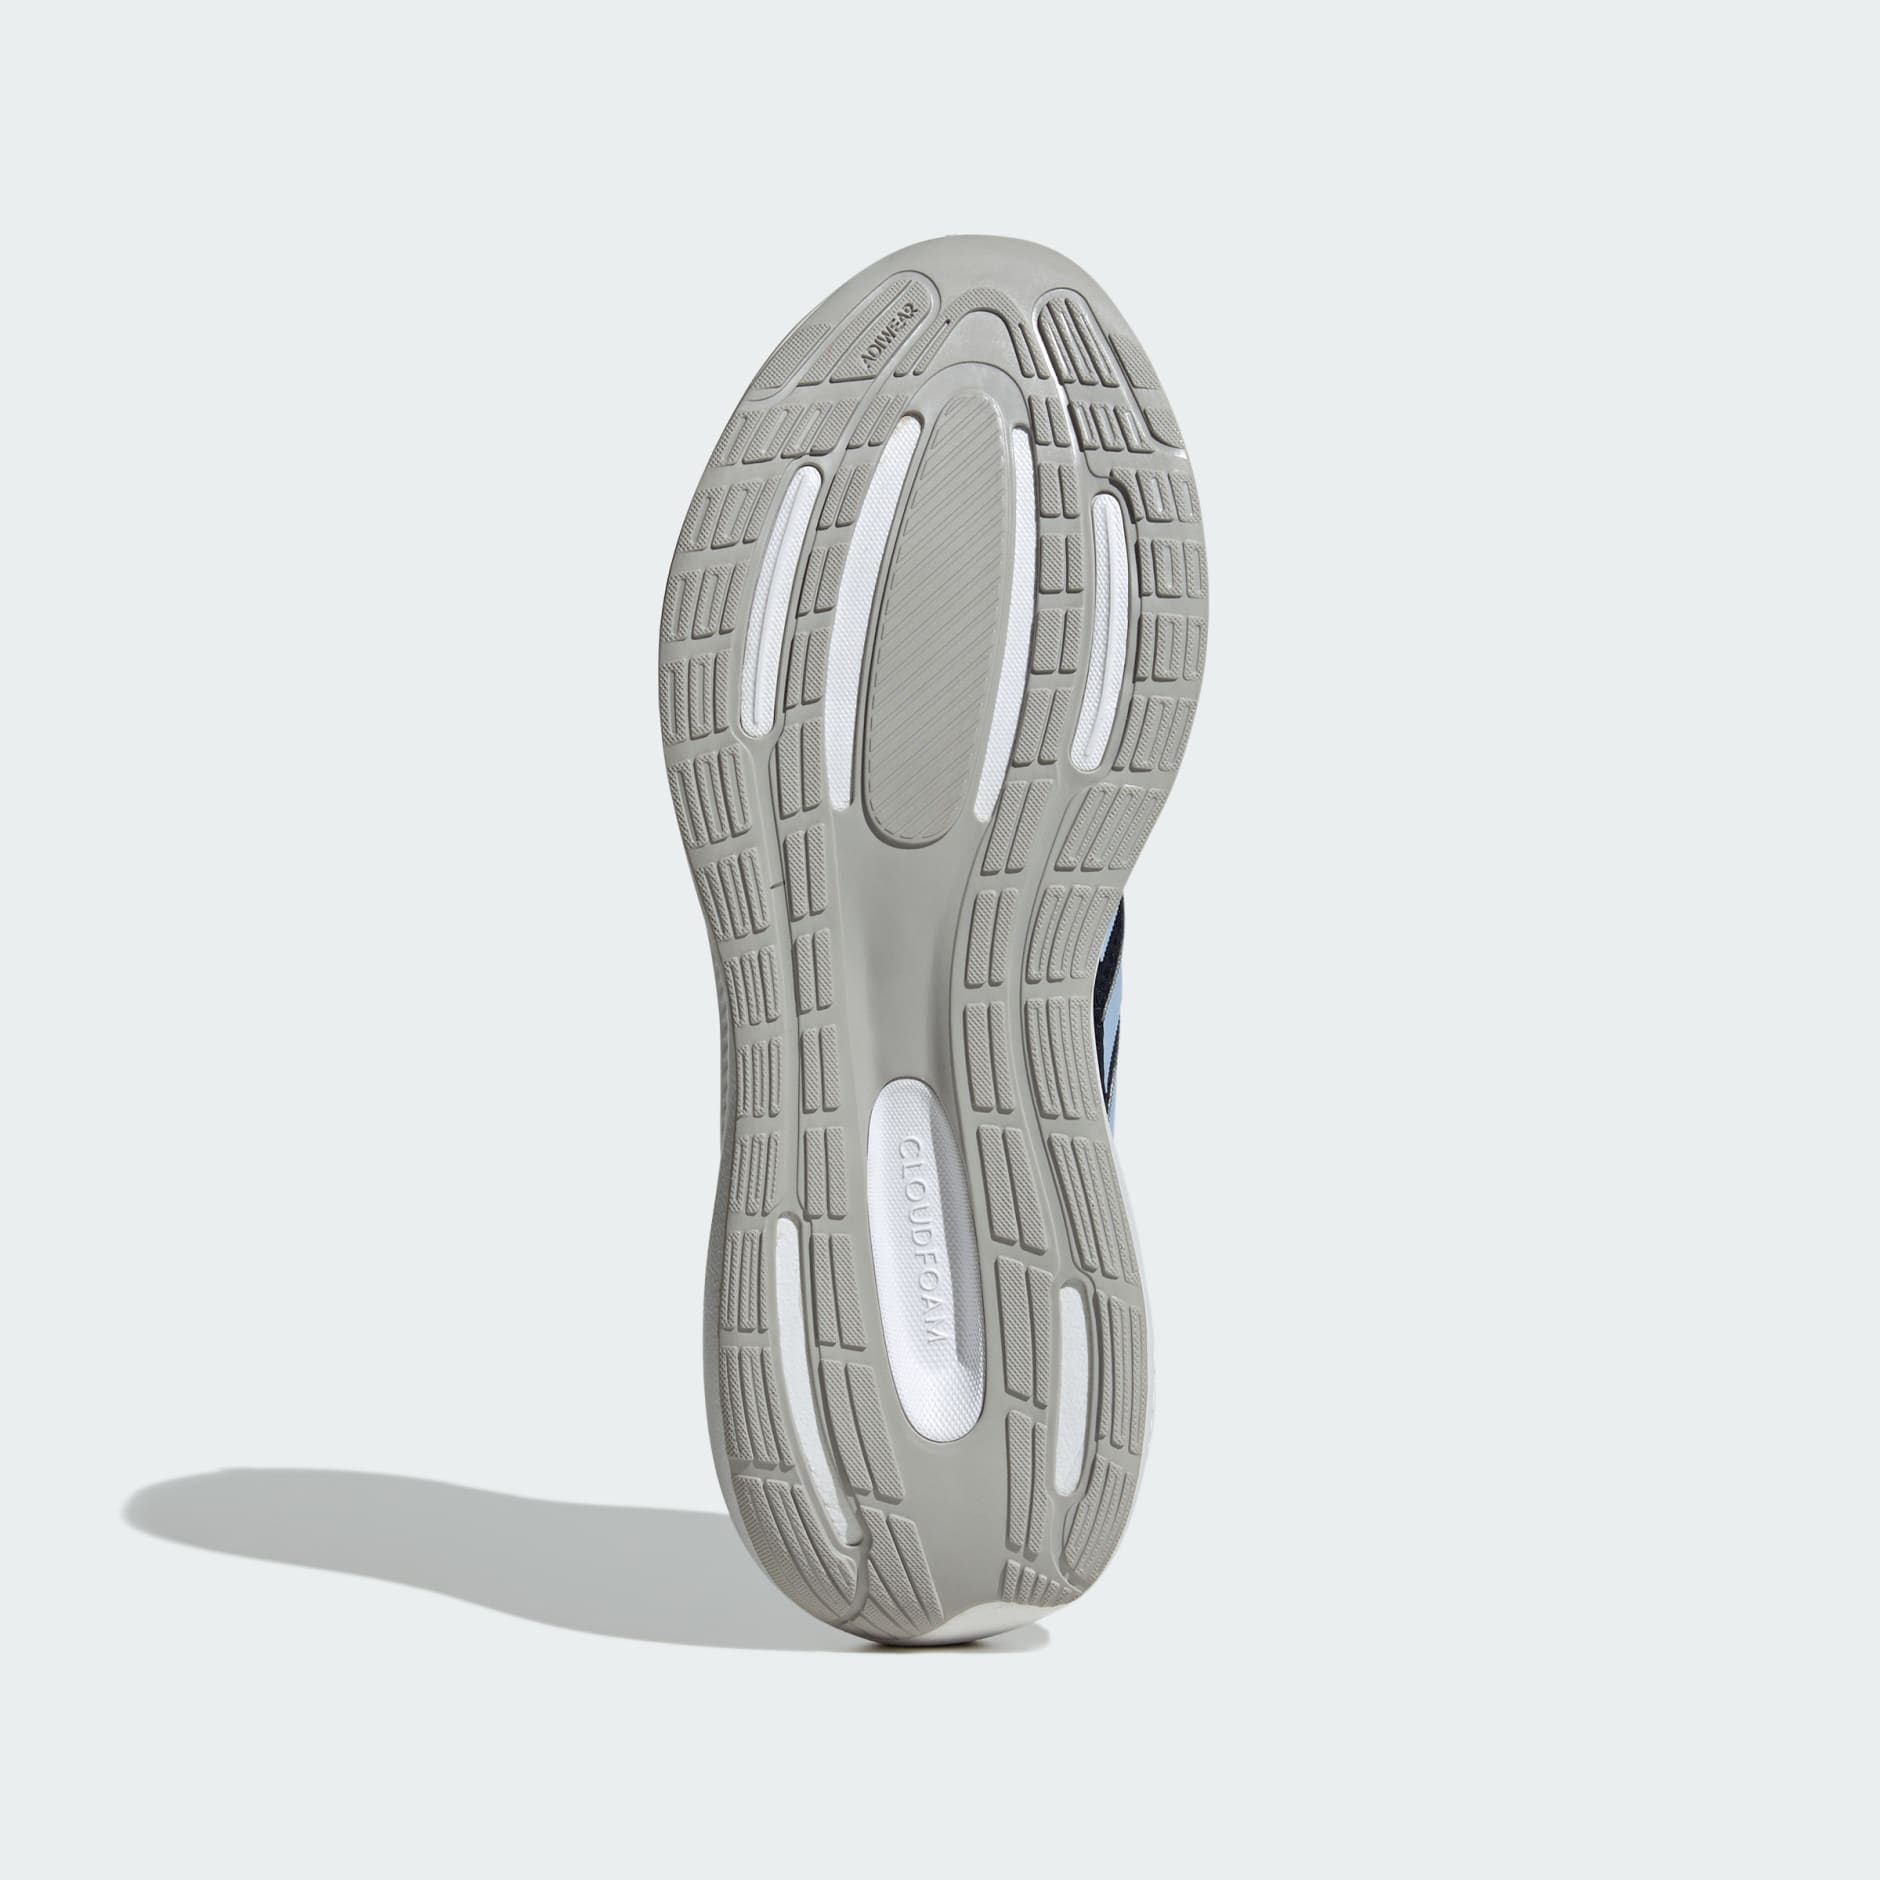 Men\'s Shoes - Runfalcon 3.0 Shoes - Blue | adidas Oman